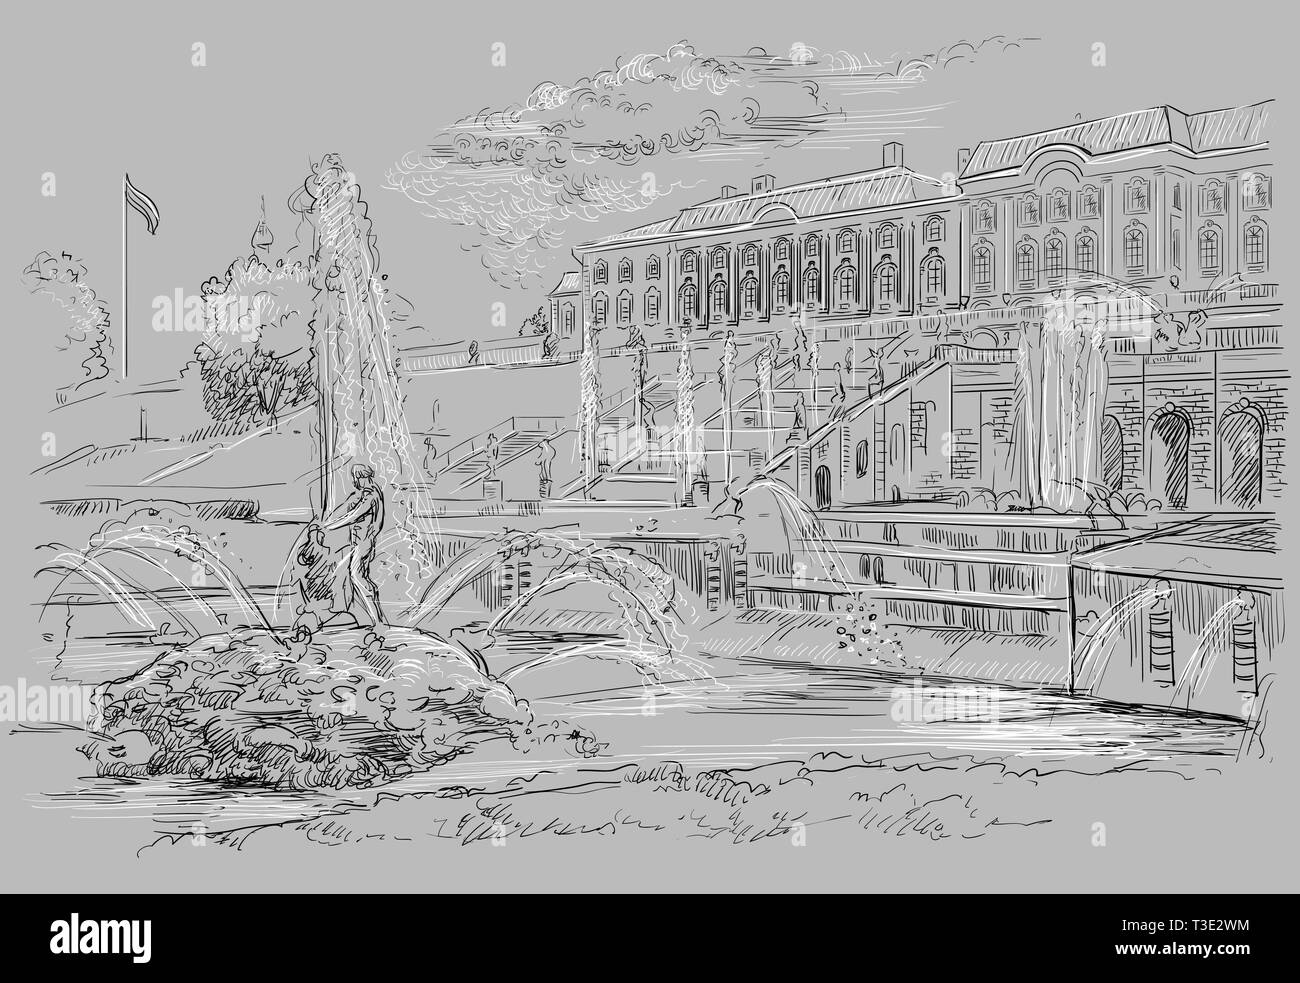 Vista panoramica della grande cascata, sculture e fontane a Peterhof Palace a San Pietroburgo, Russia. Vettore isolato del disegno a mano mi illustrazione Illustrazione Vettoriale